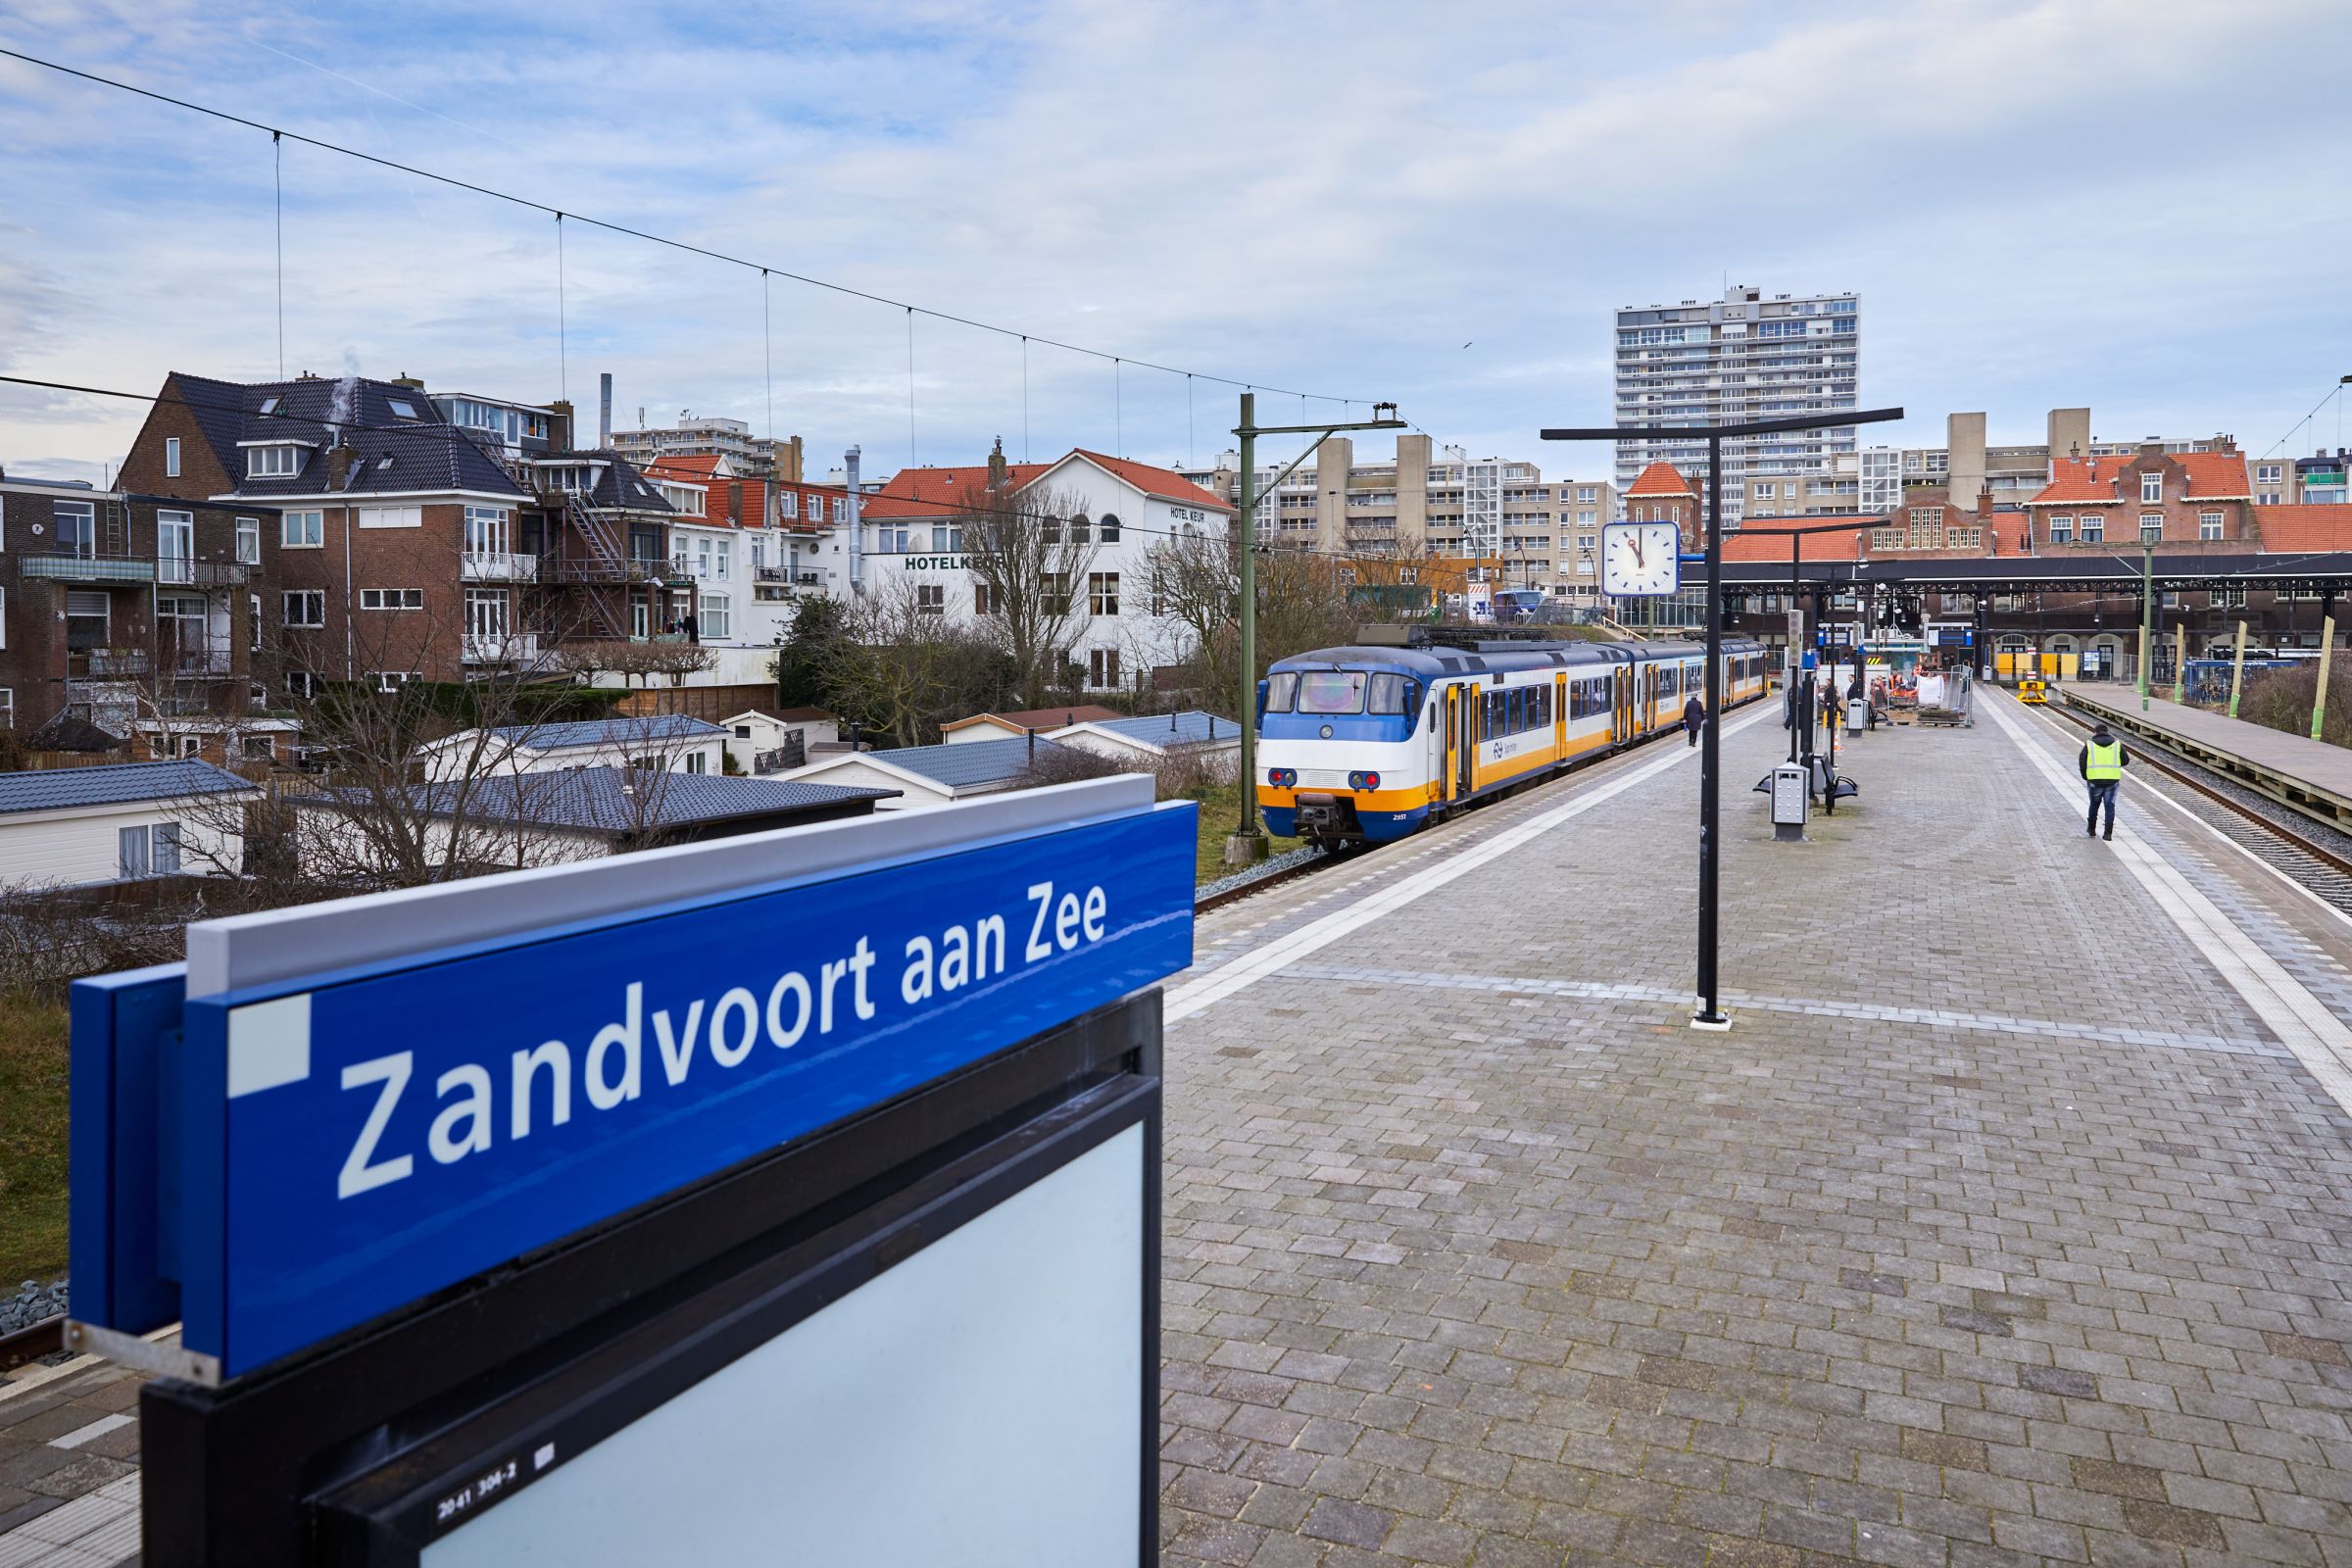 Station Zandvoort aan Zee werd klaargemaakt voor duizenden raceliefhebbers